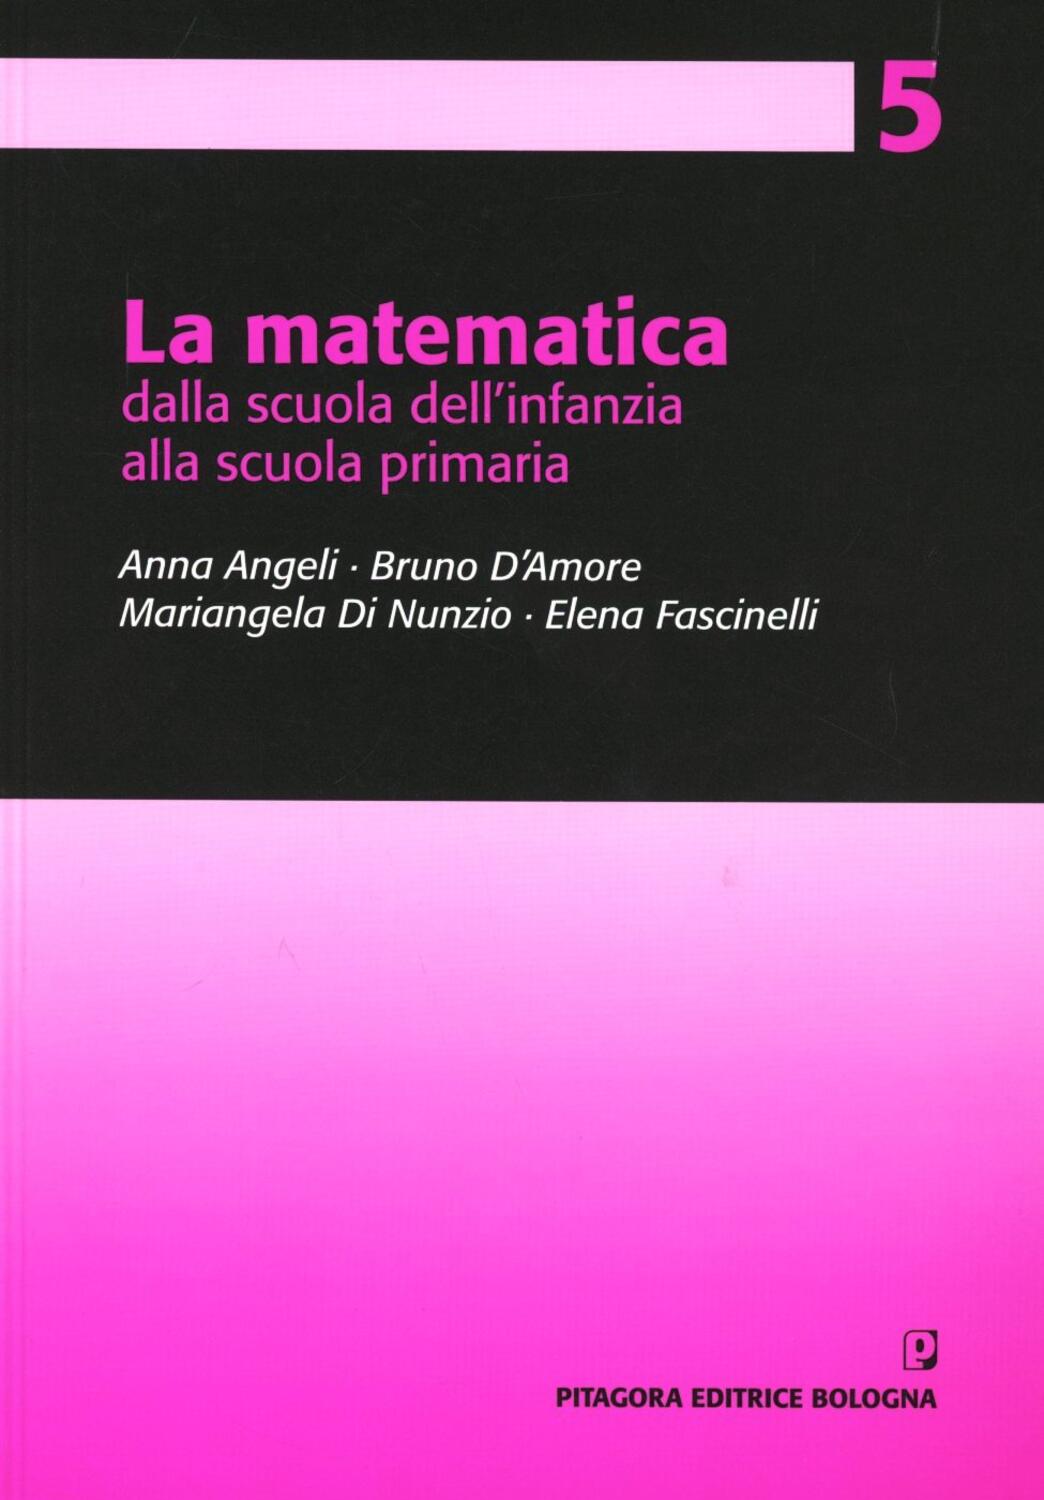 La matematica dalla scuola dell infanzia alla scuola primaria Anna Angeli Bruno D Amore Libro Pitagora Pro to matematica nella scuola primaria